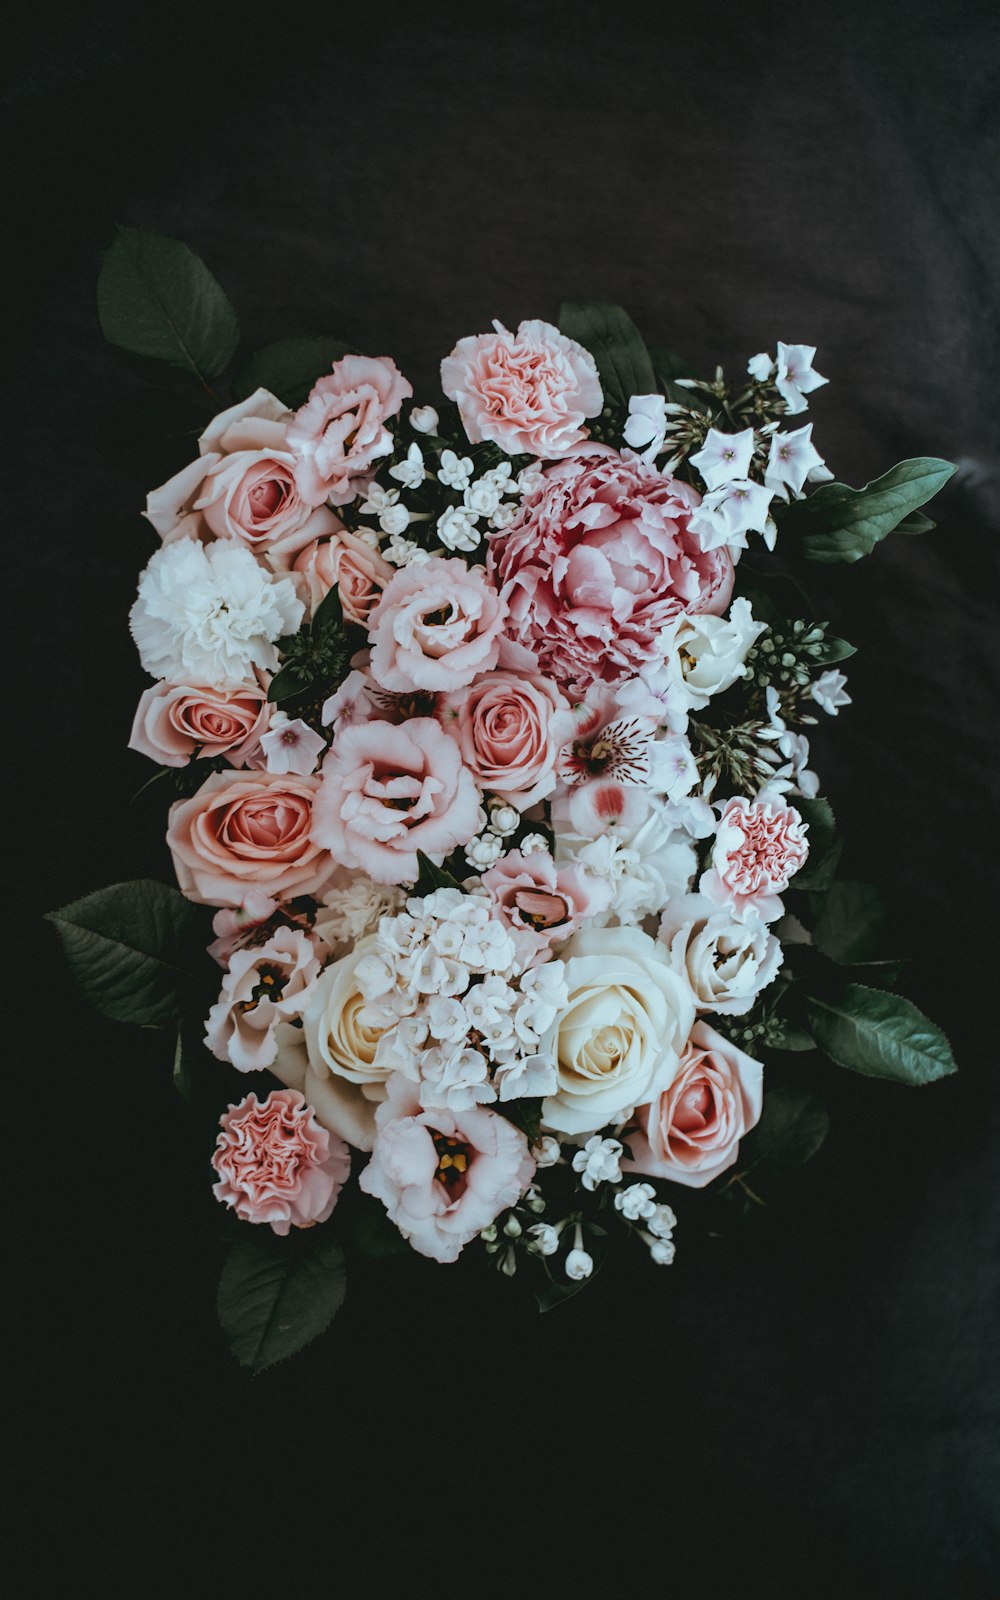 composizione floreale con petali bianchi e rosa